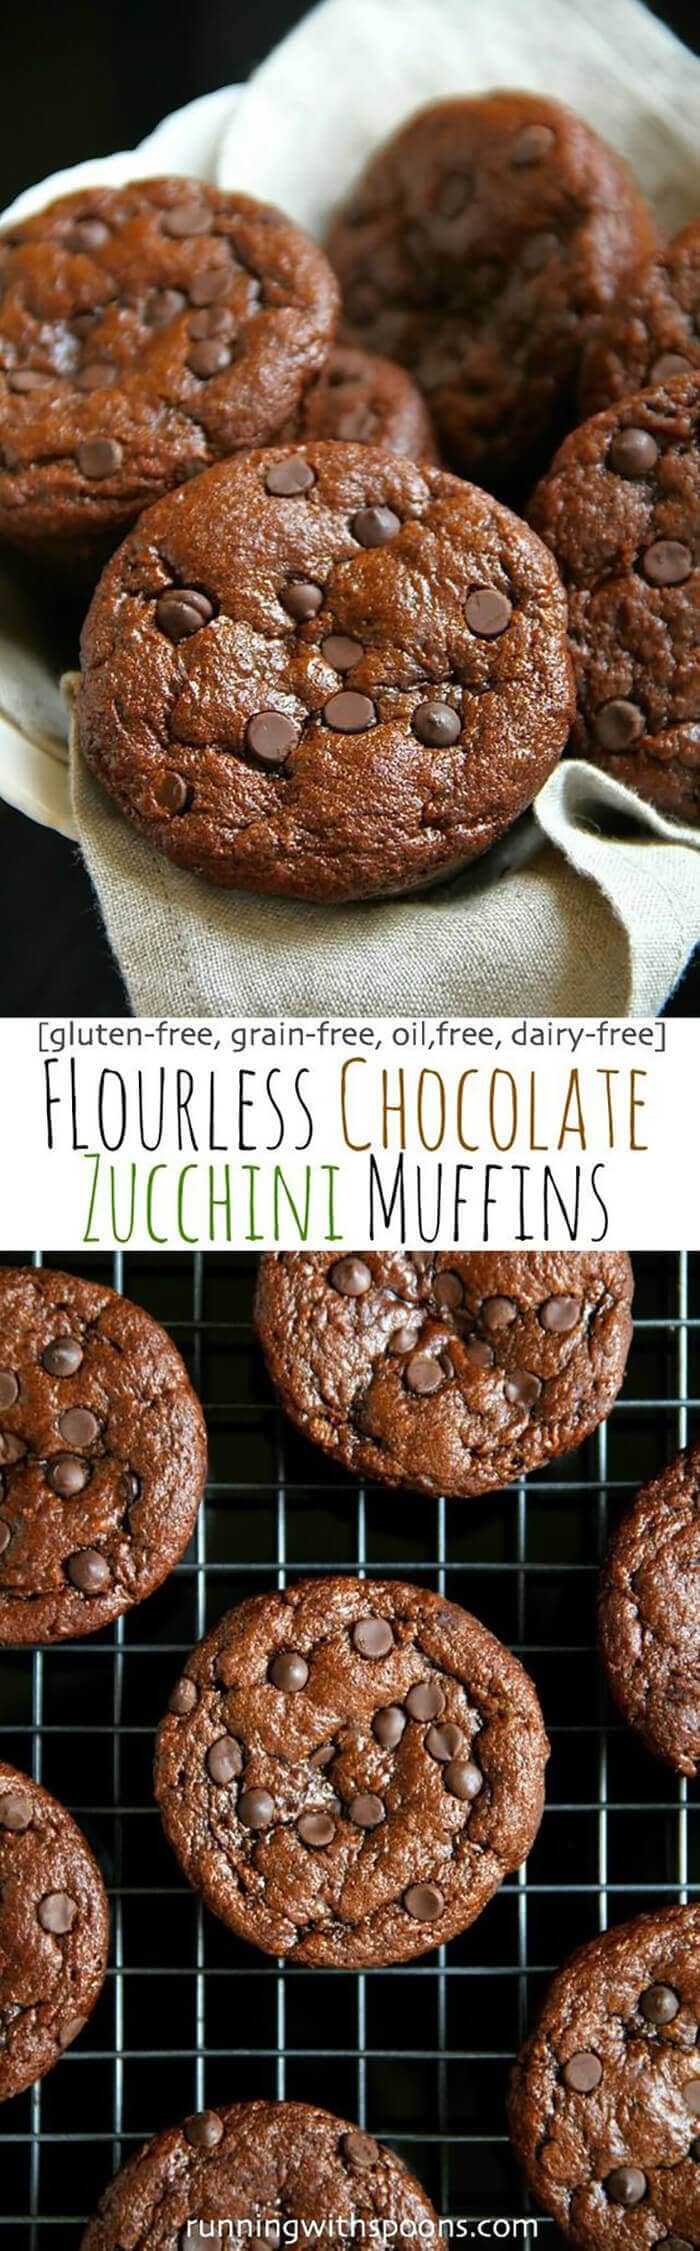 Flourless Chocolate Zucchini Muffins